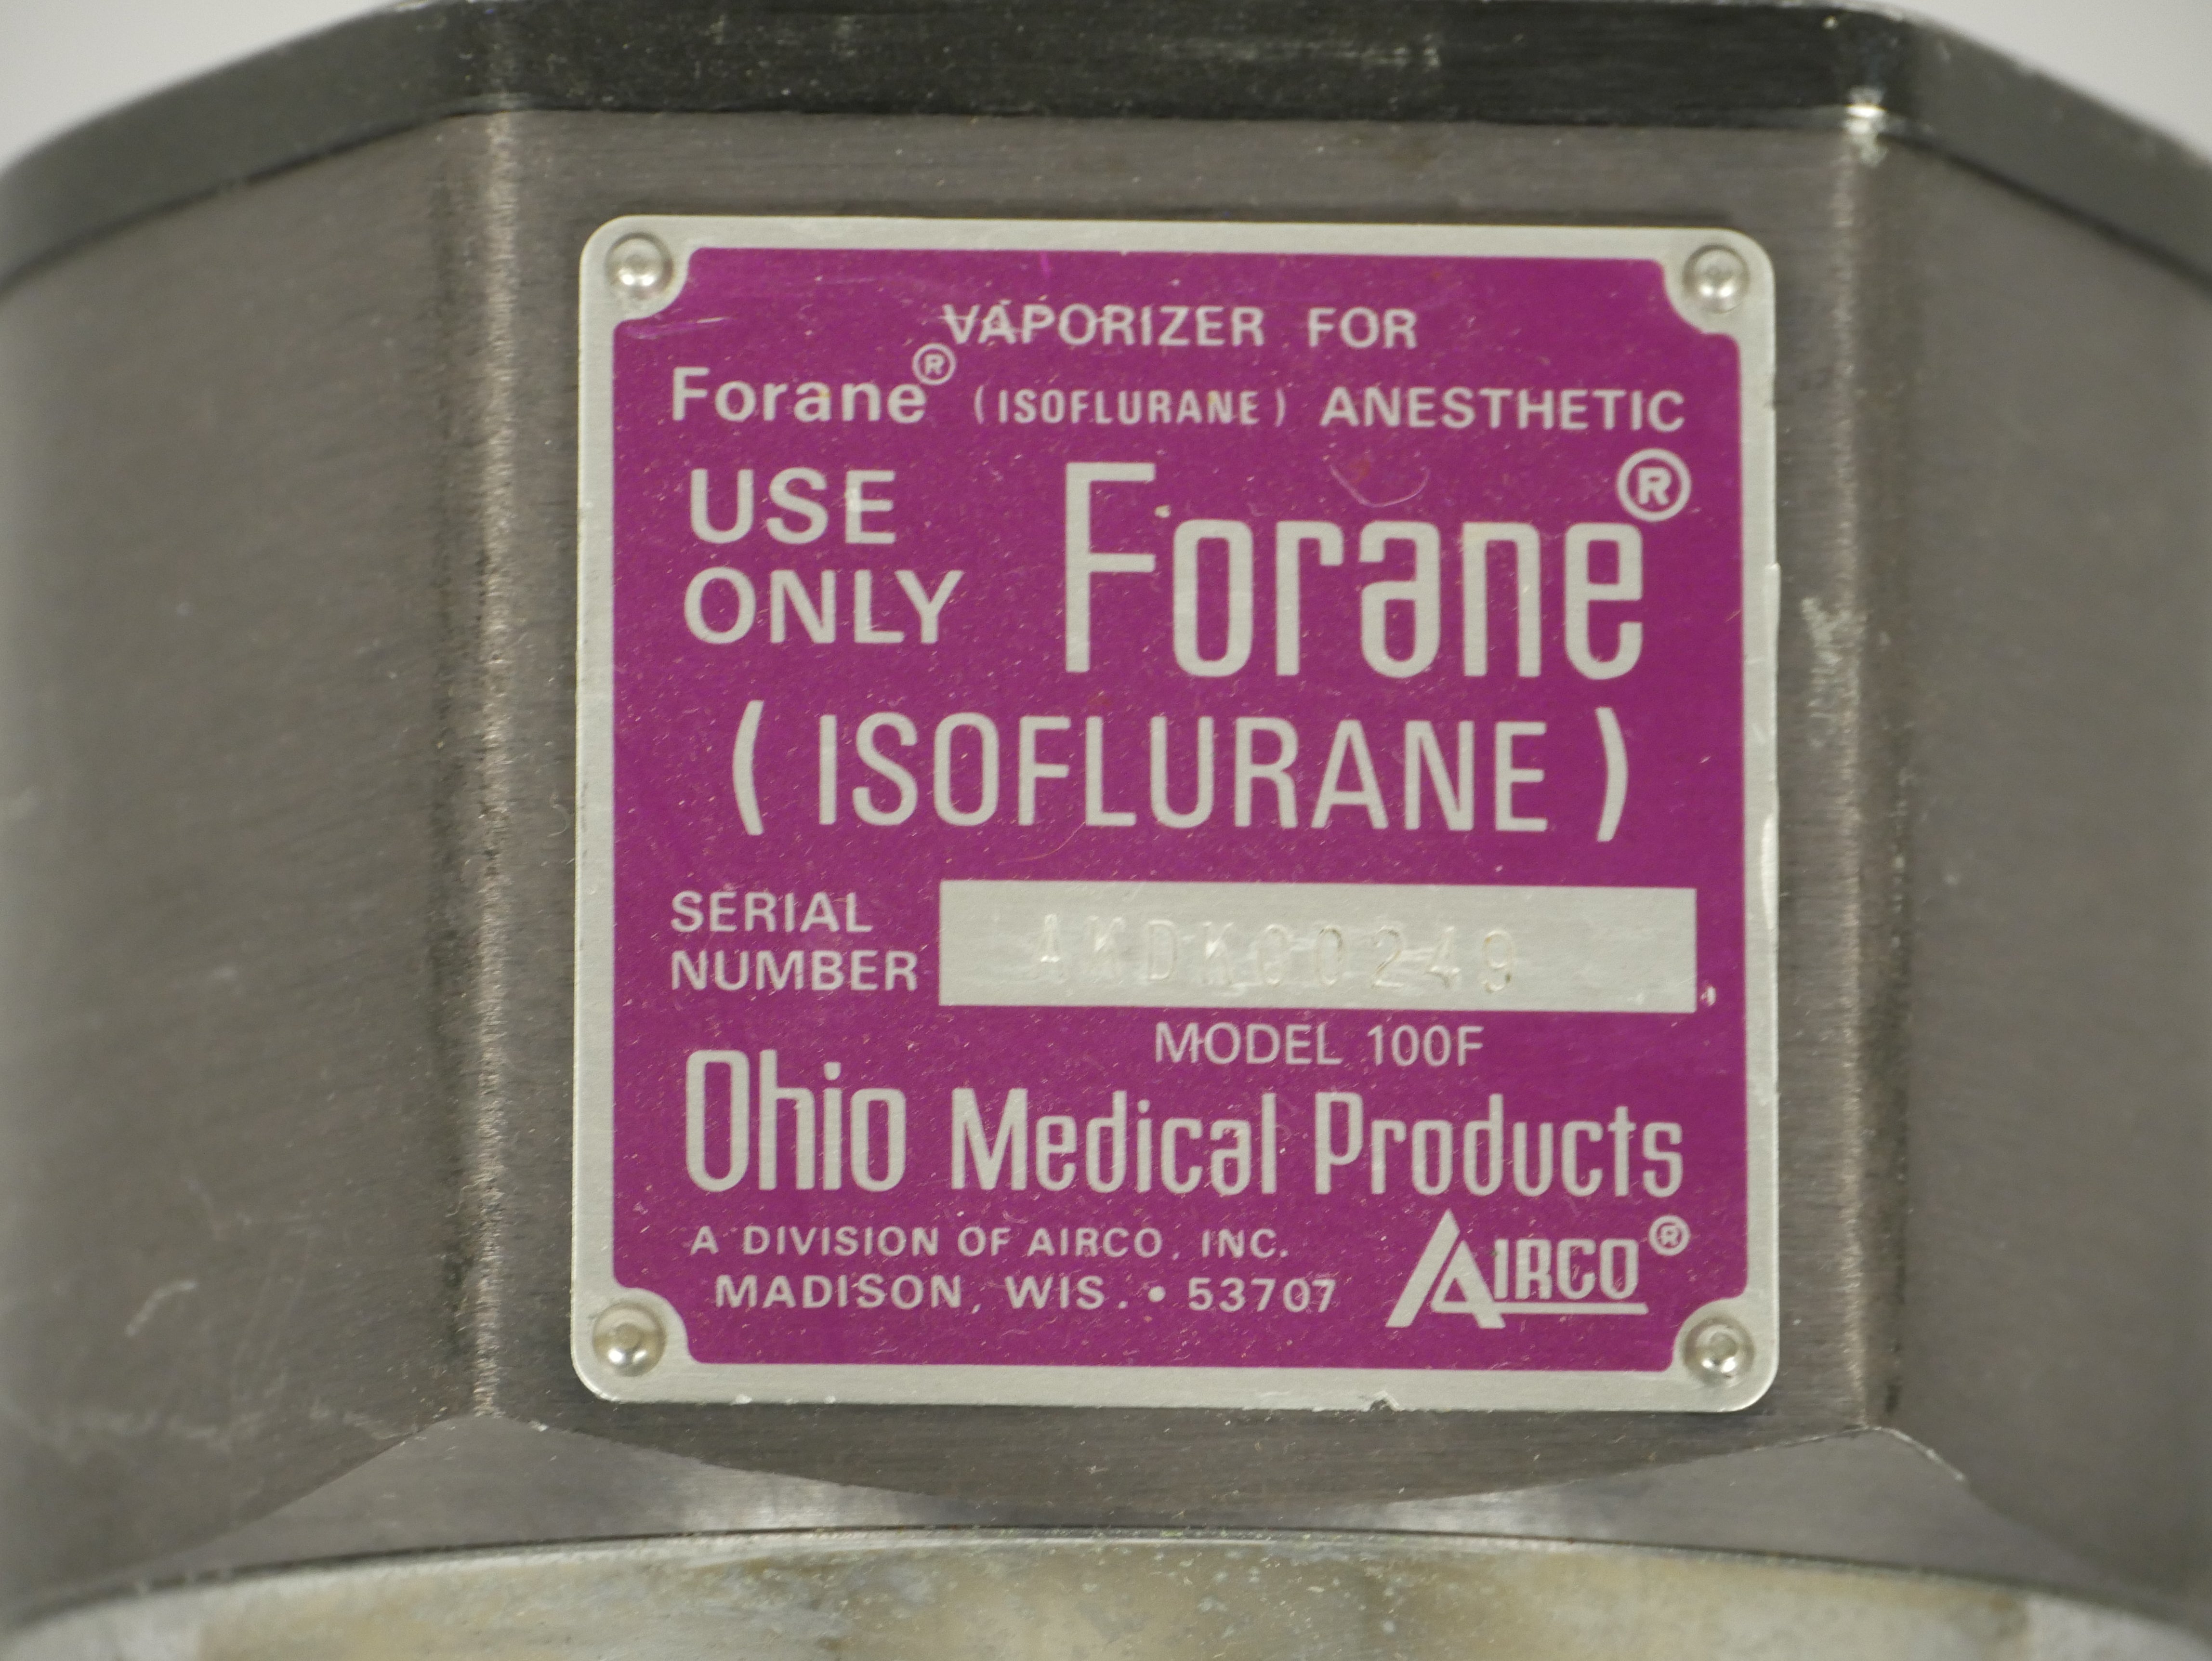 Ohio Medical Products Forane Vaporizer 100F